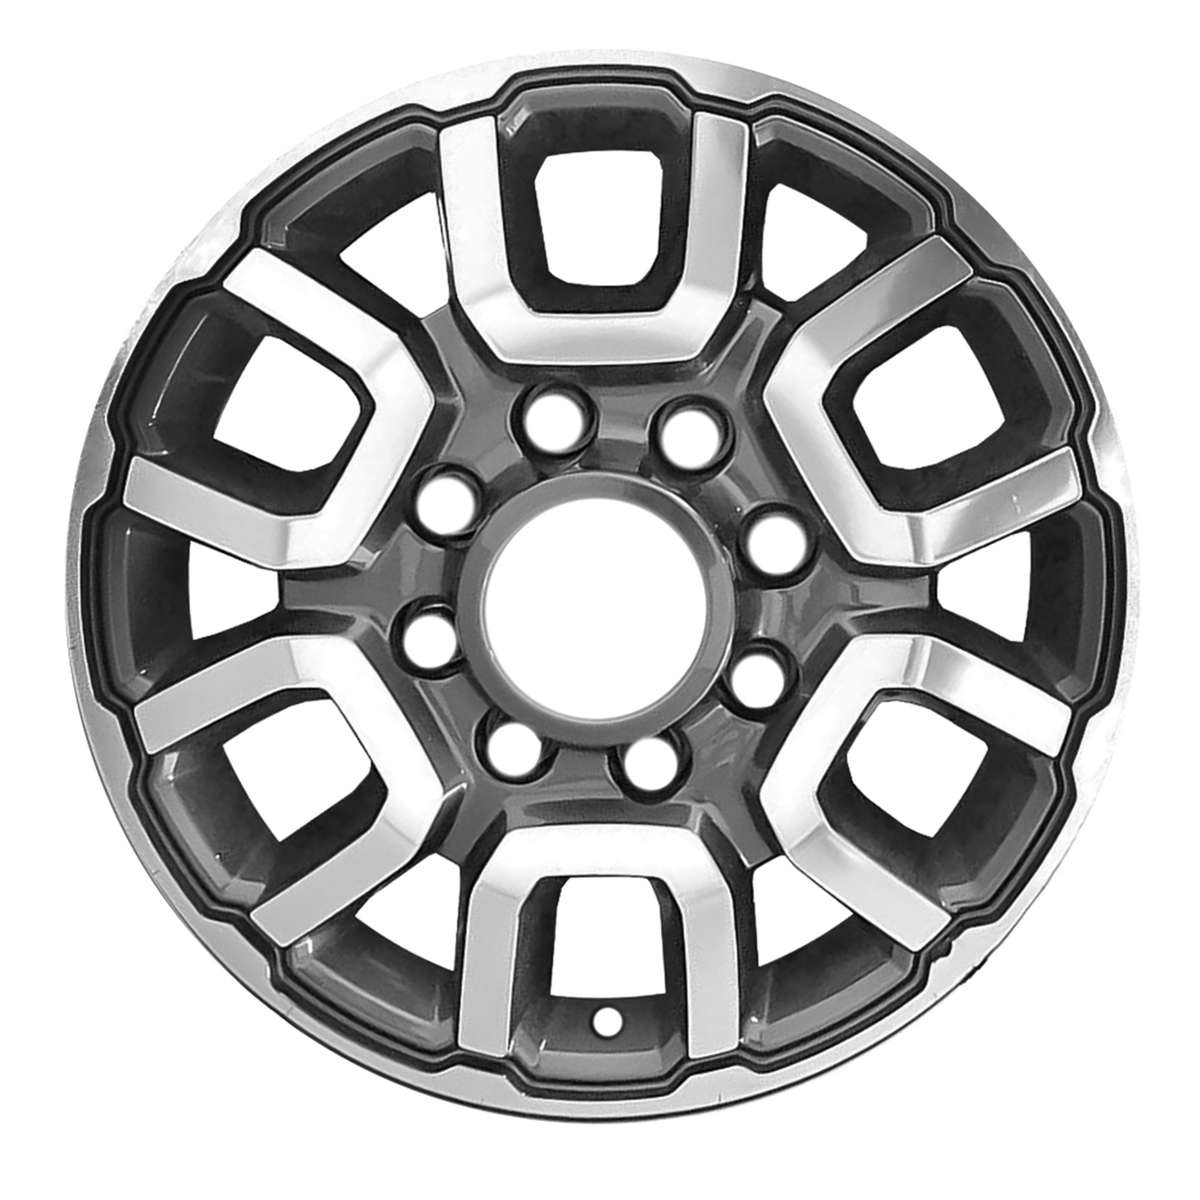 2021 Dodge RAM 3500 18" OEM Wheel Rim W2694MDC